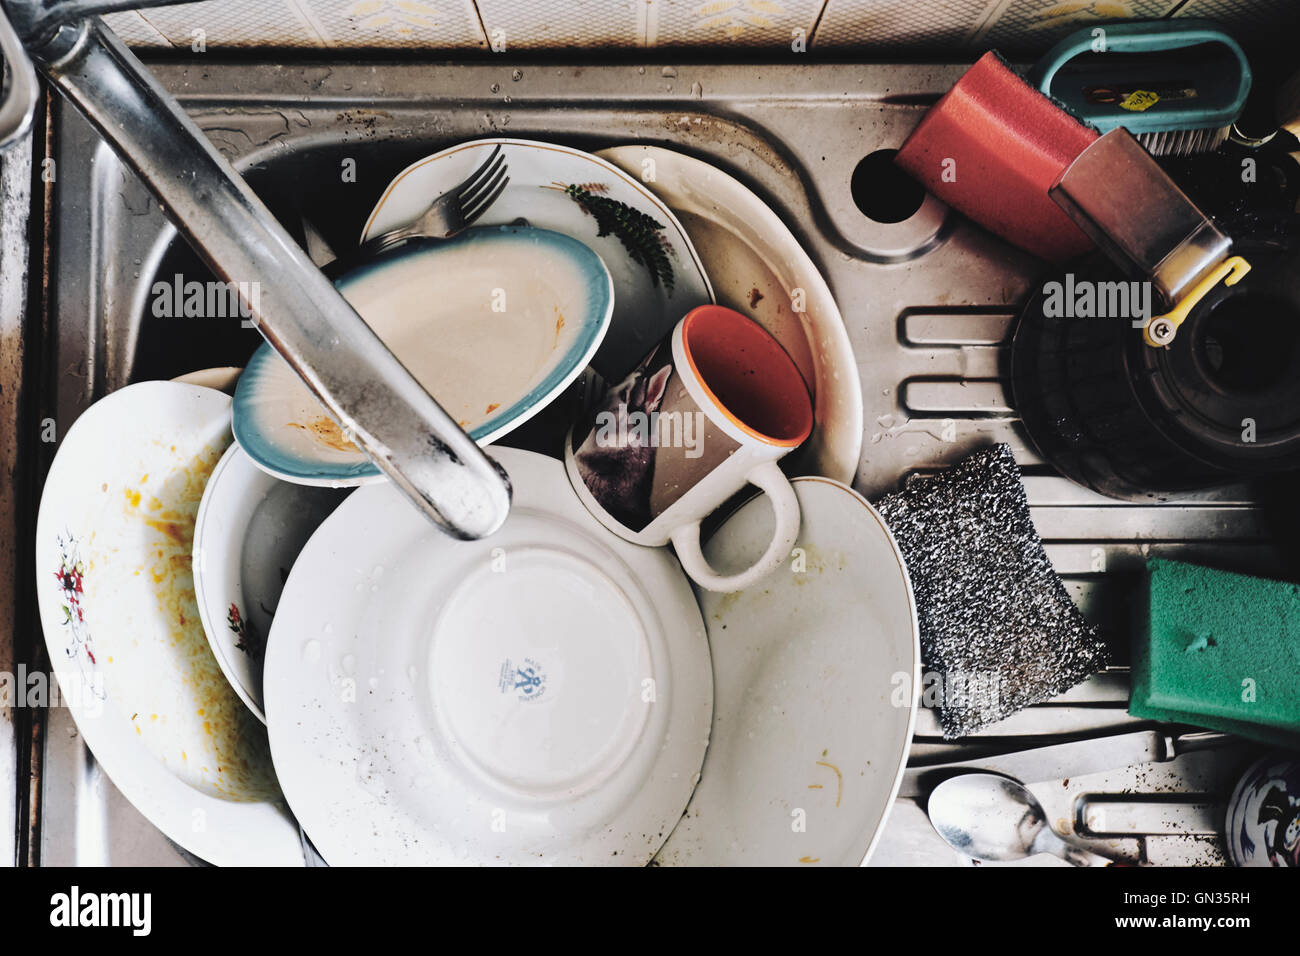 La vaisselle sale, malpropre, cuisine, ménage Banque D'Images